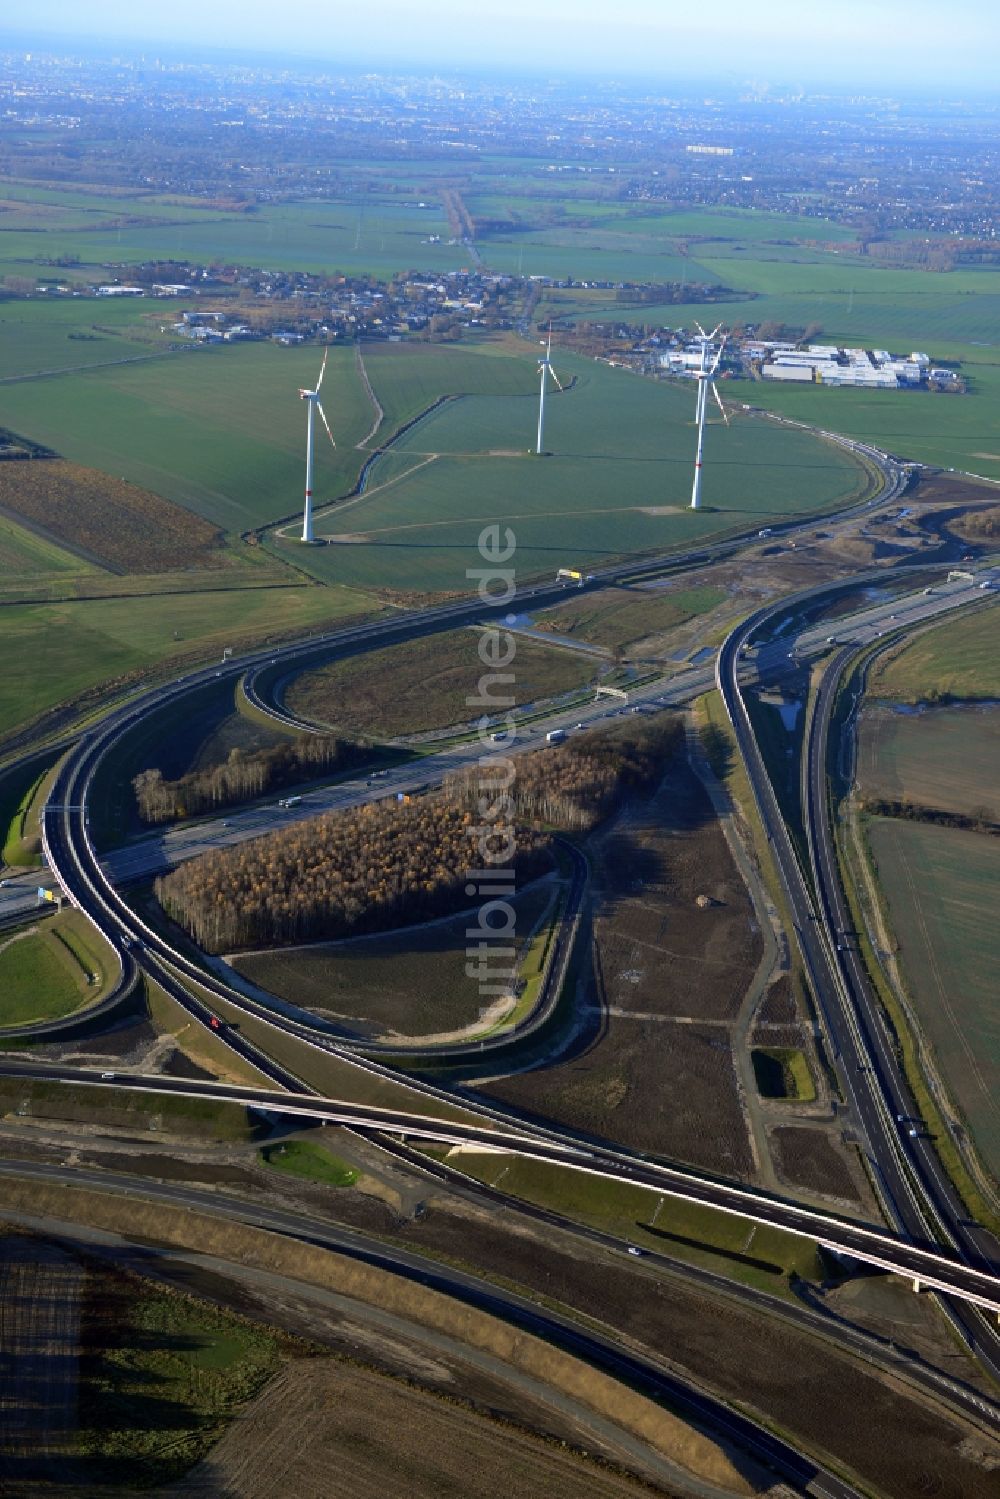 Luftaufnahme Schwanebeck - Autobahndreieck der BAB A10 - A11 Dreieck Barnim in Schwanebeck im Bundesland Brandenburg, Deutschland